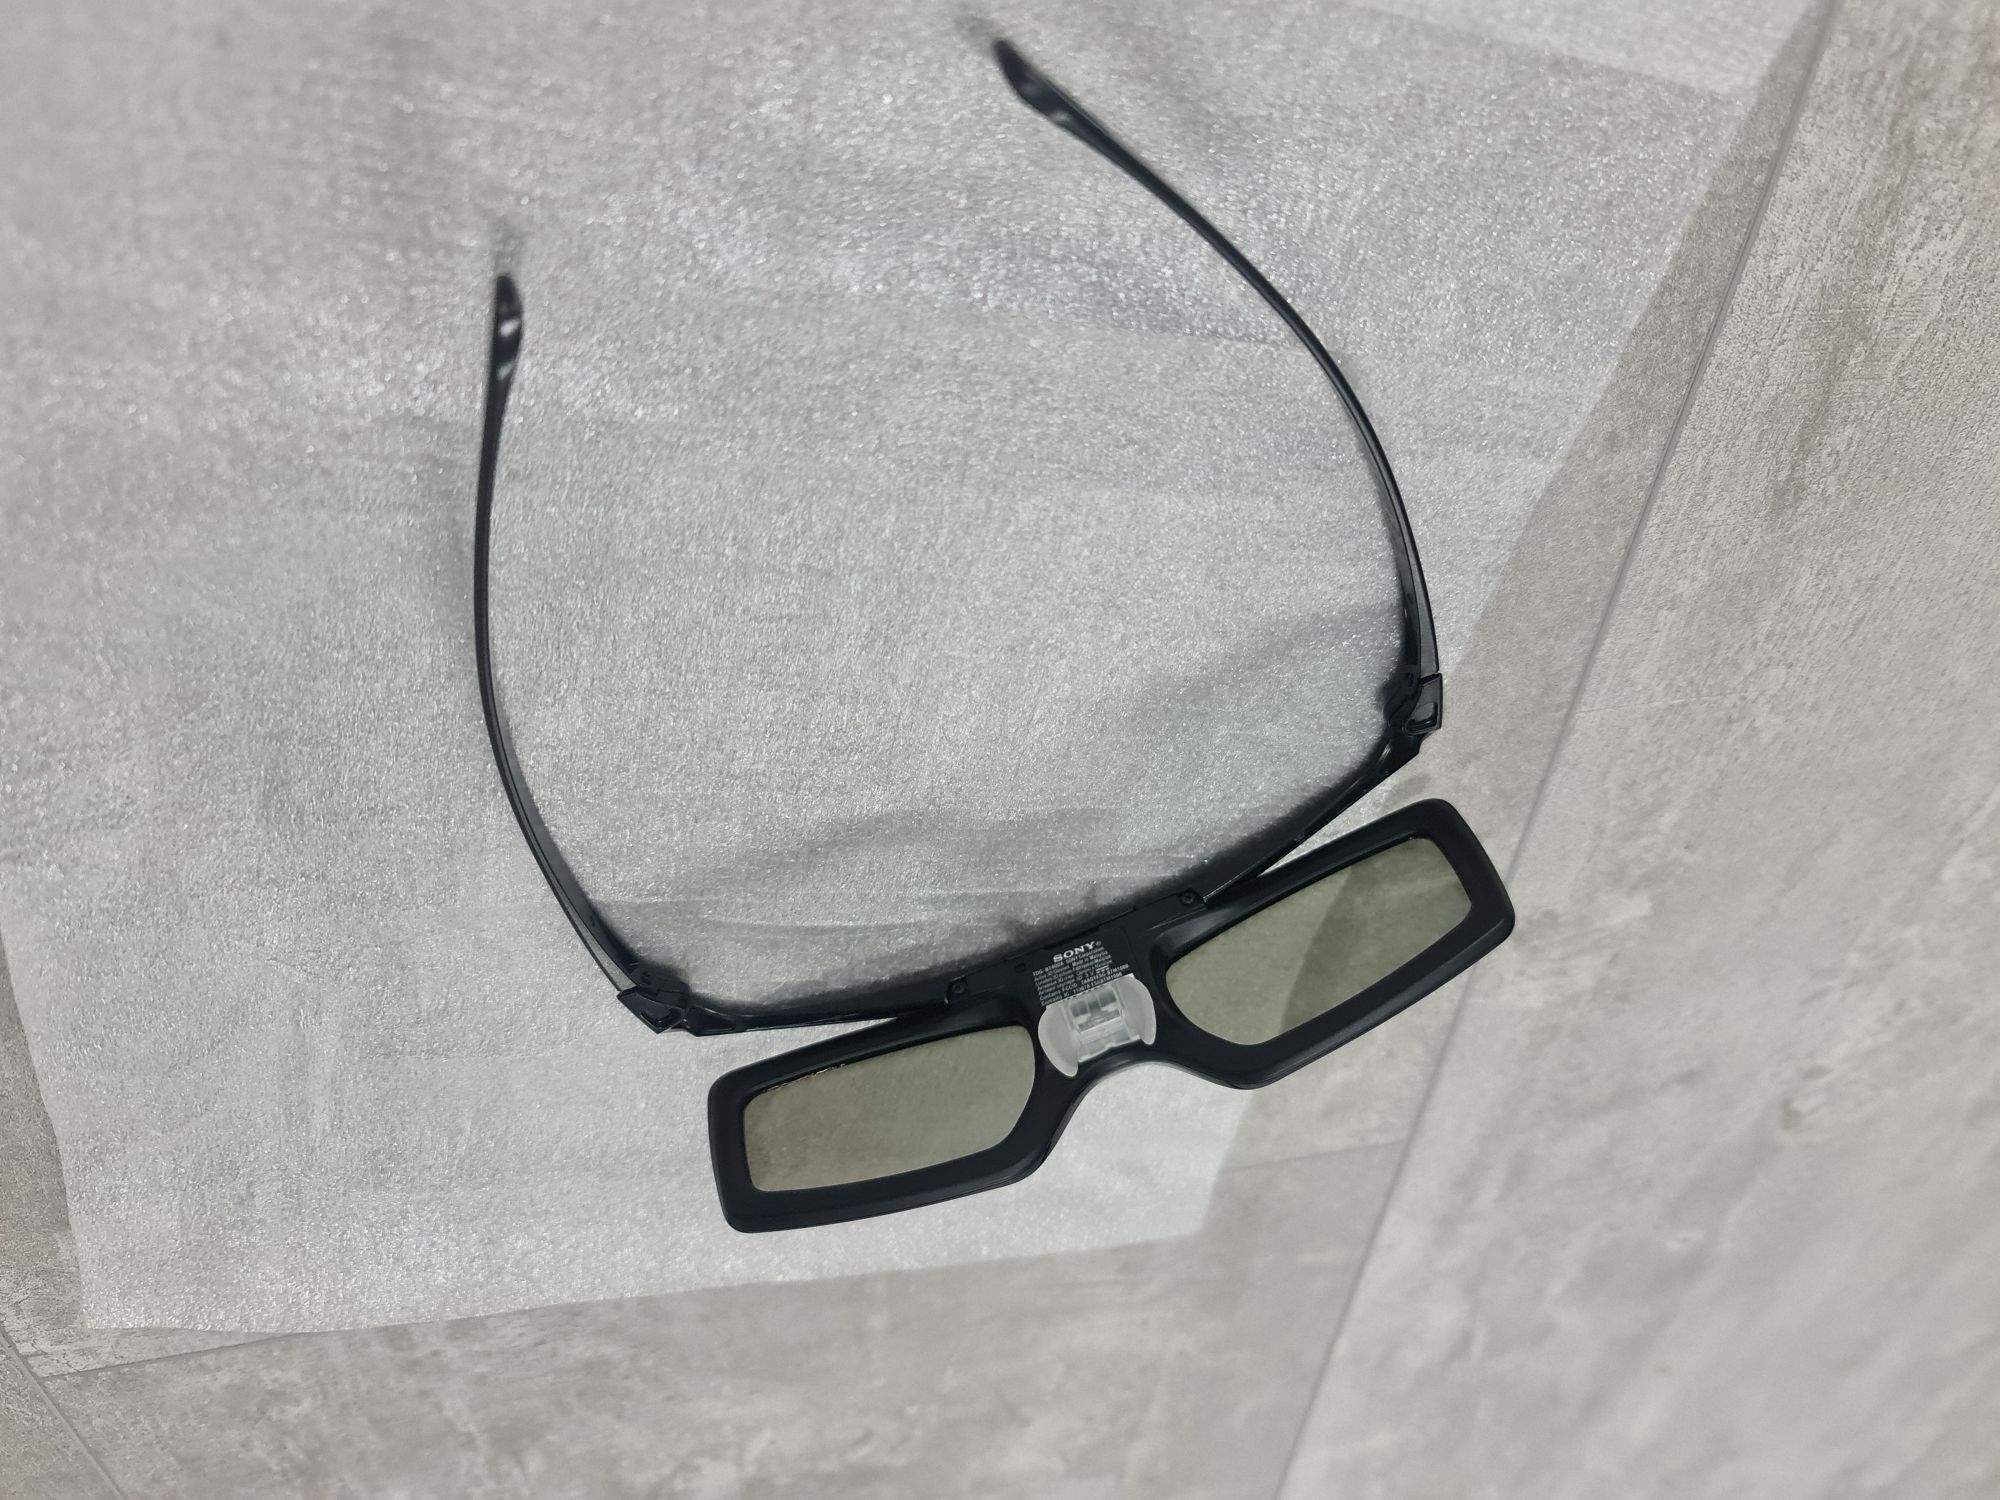 Nowe okulary Sony 3d TDG-BT 400A - 2 sztuki